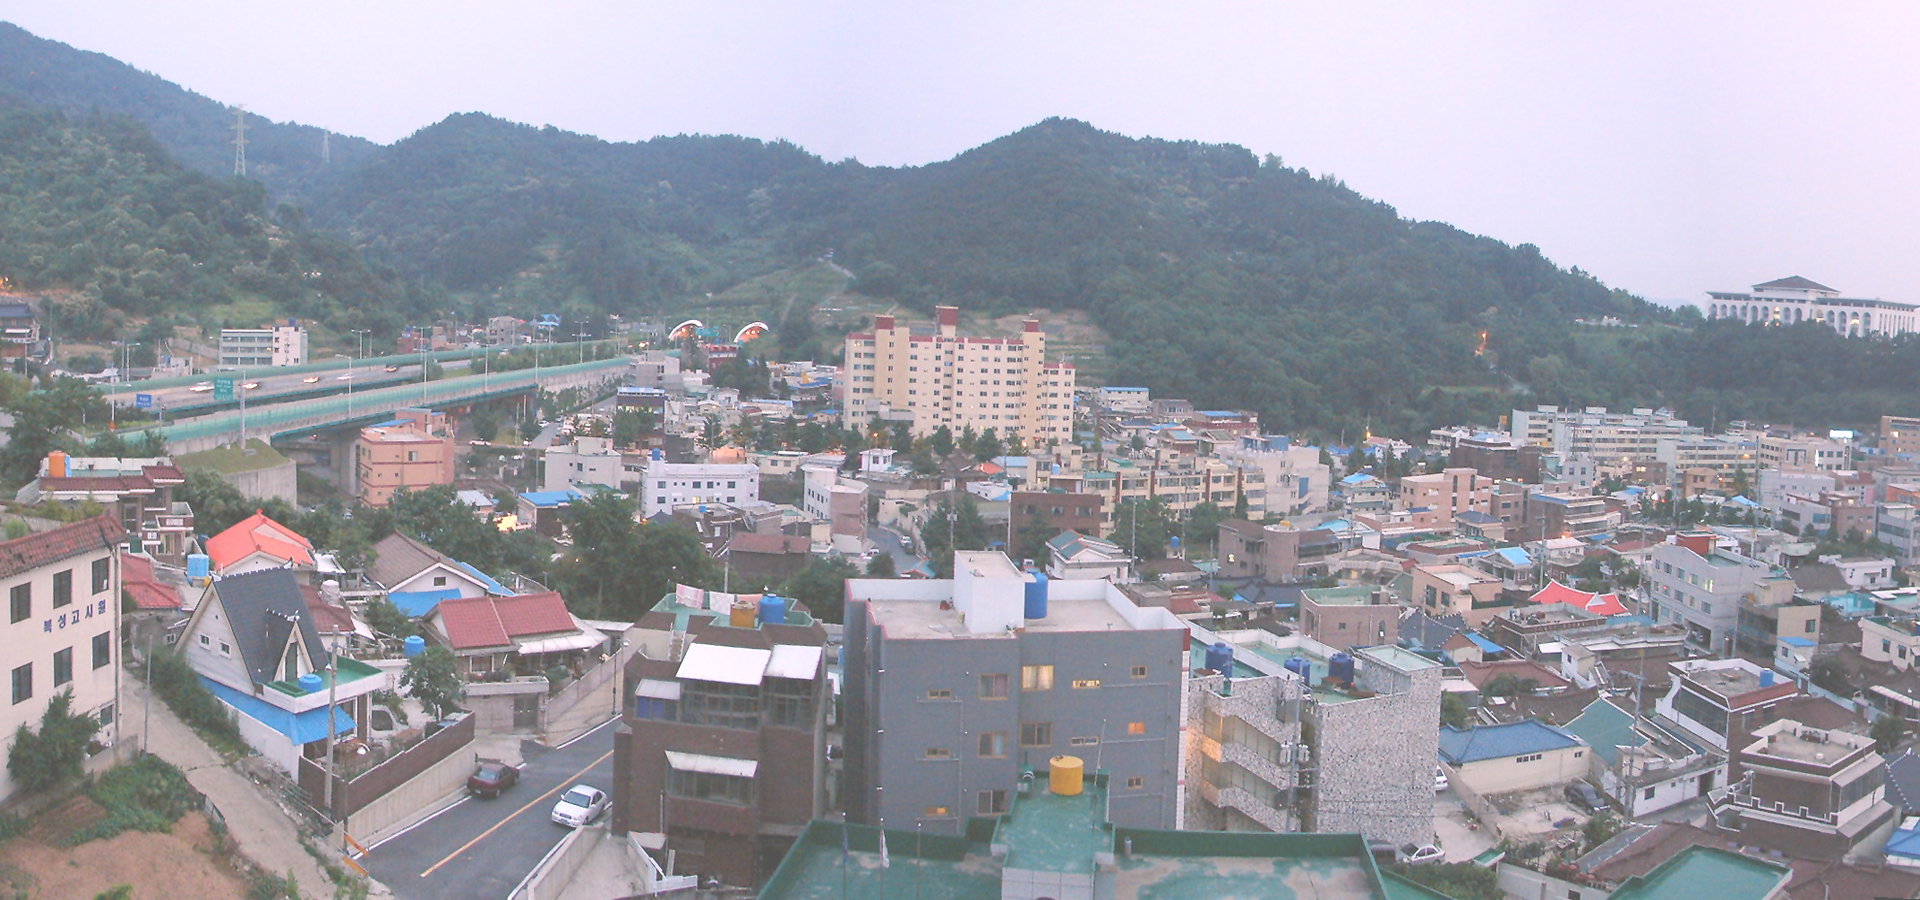 <b>Gwangju, Honam, South Korea</b>